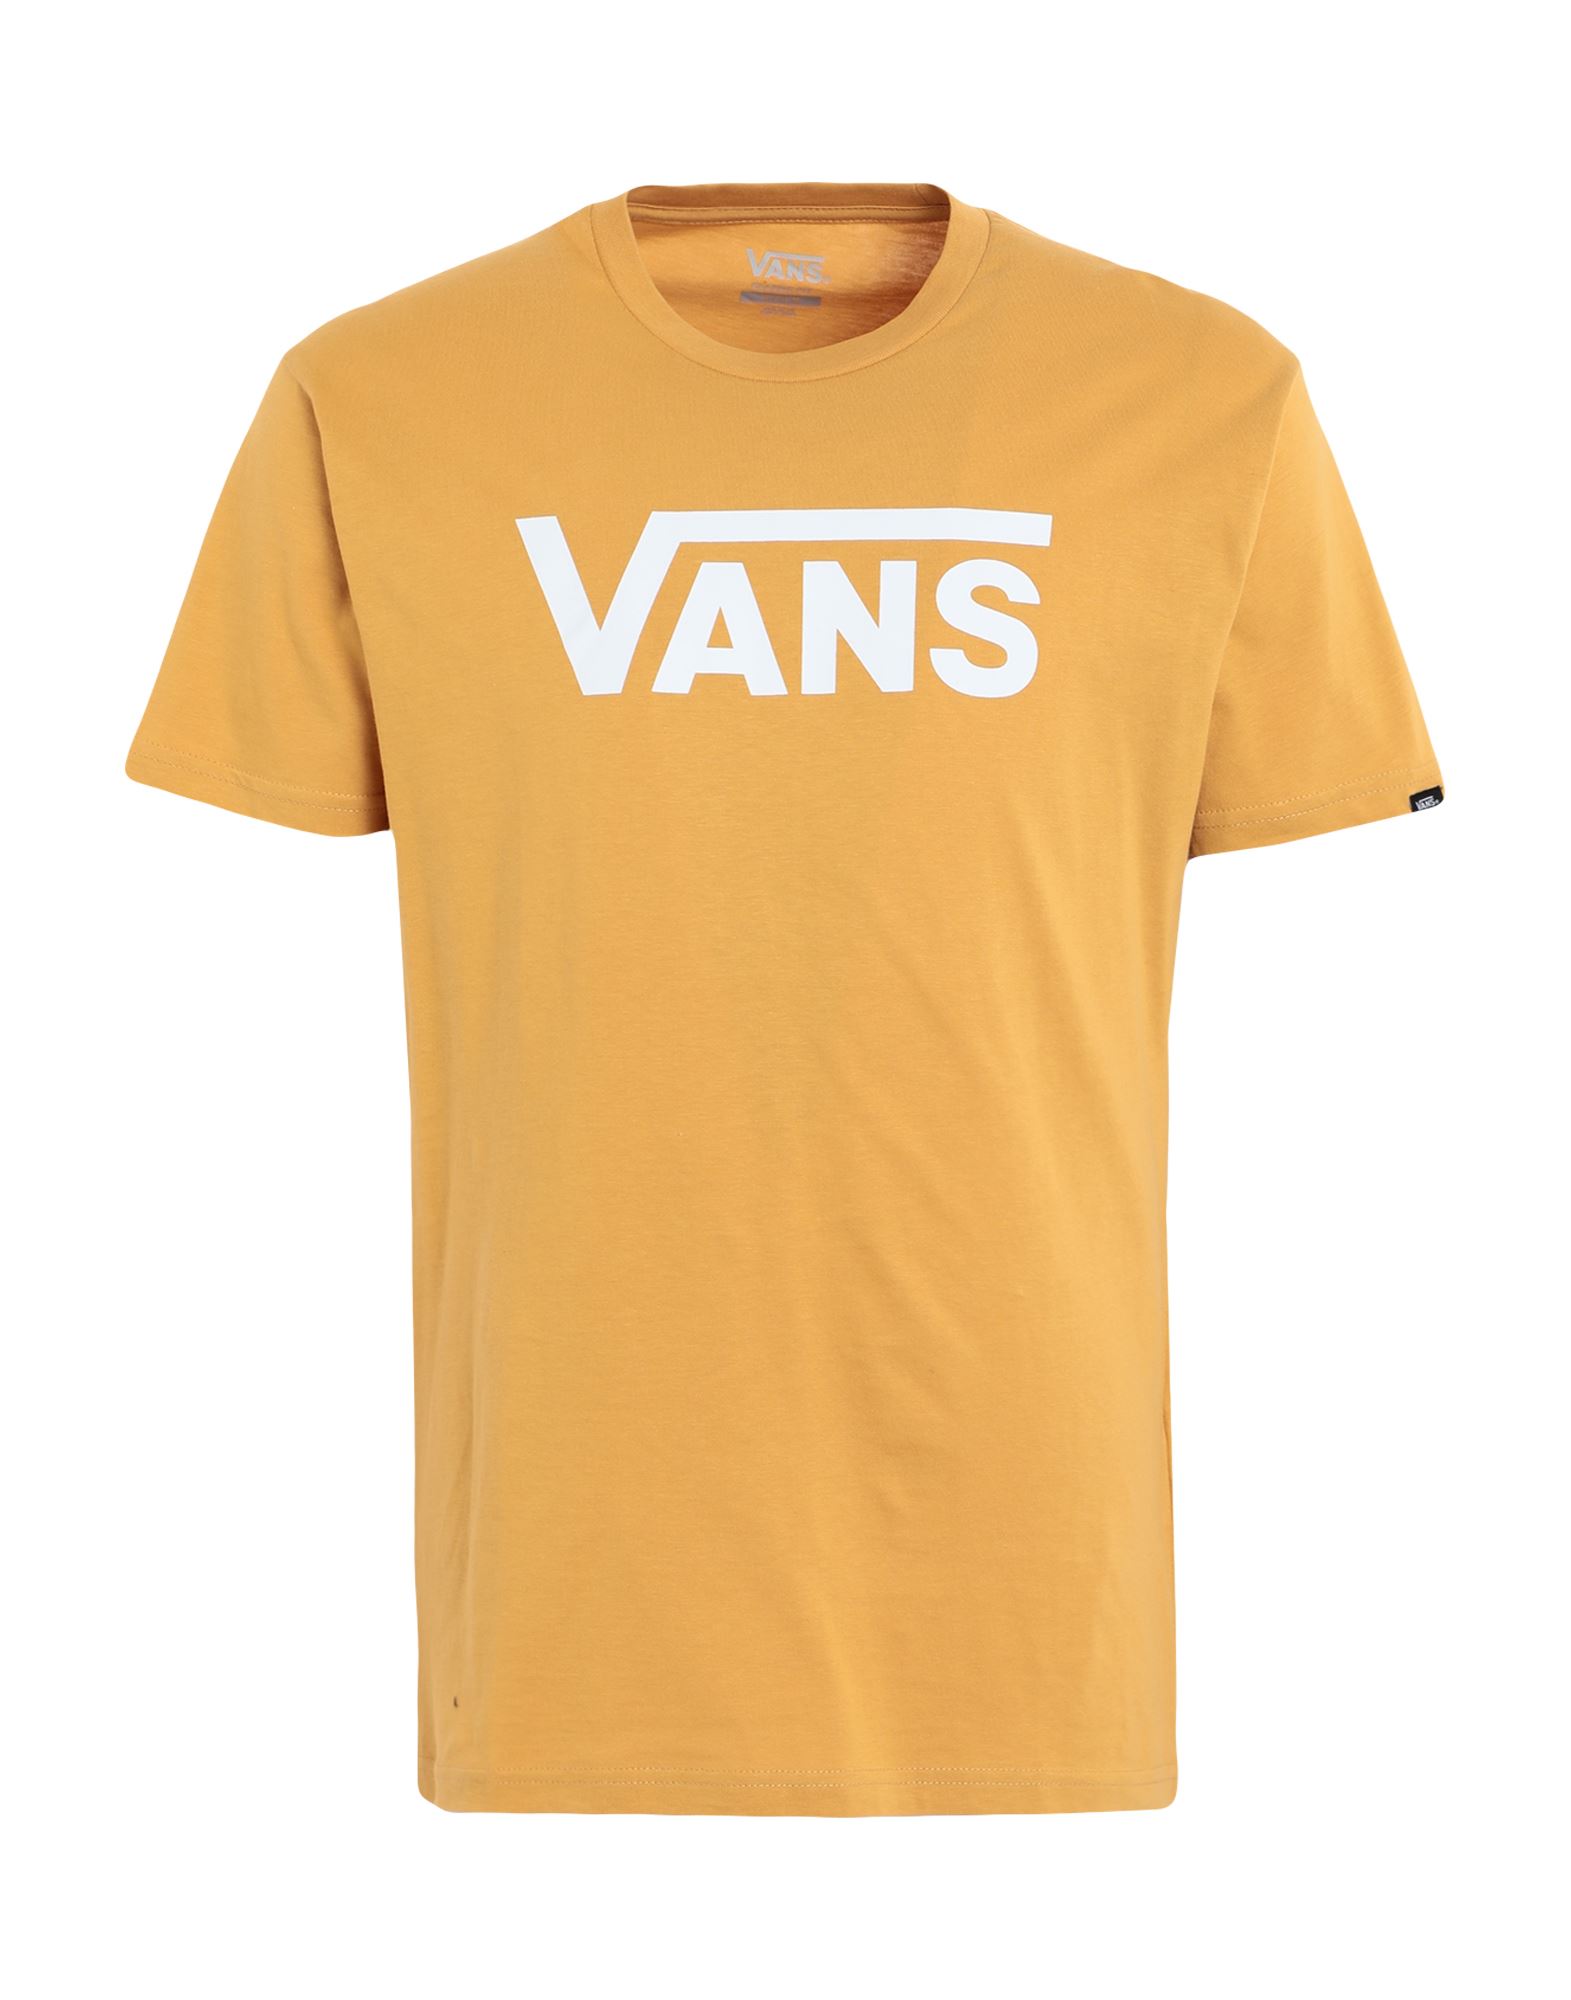 VANS T-shirts Herren Ocker von VANS